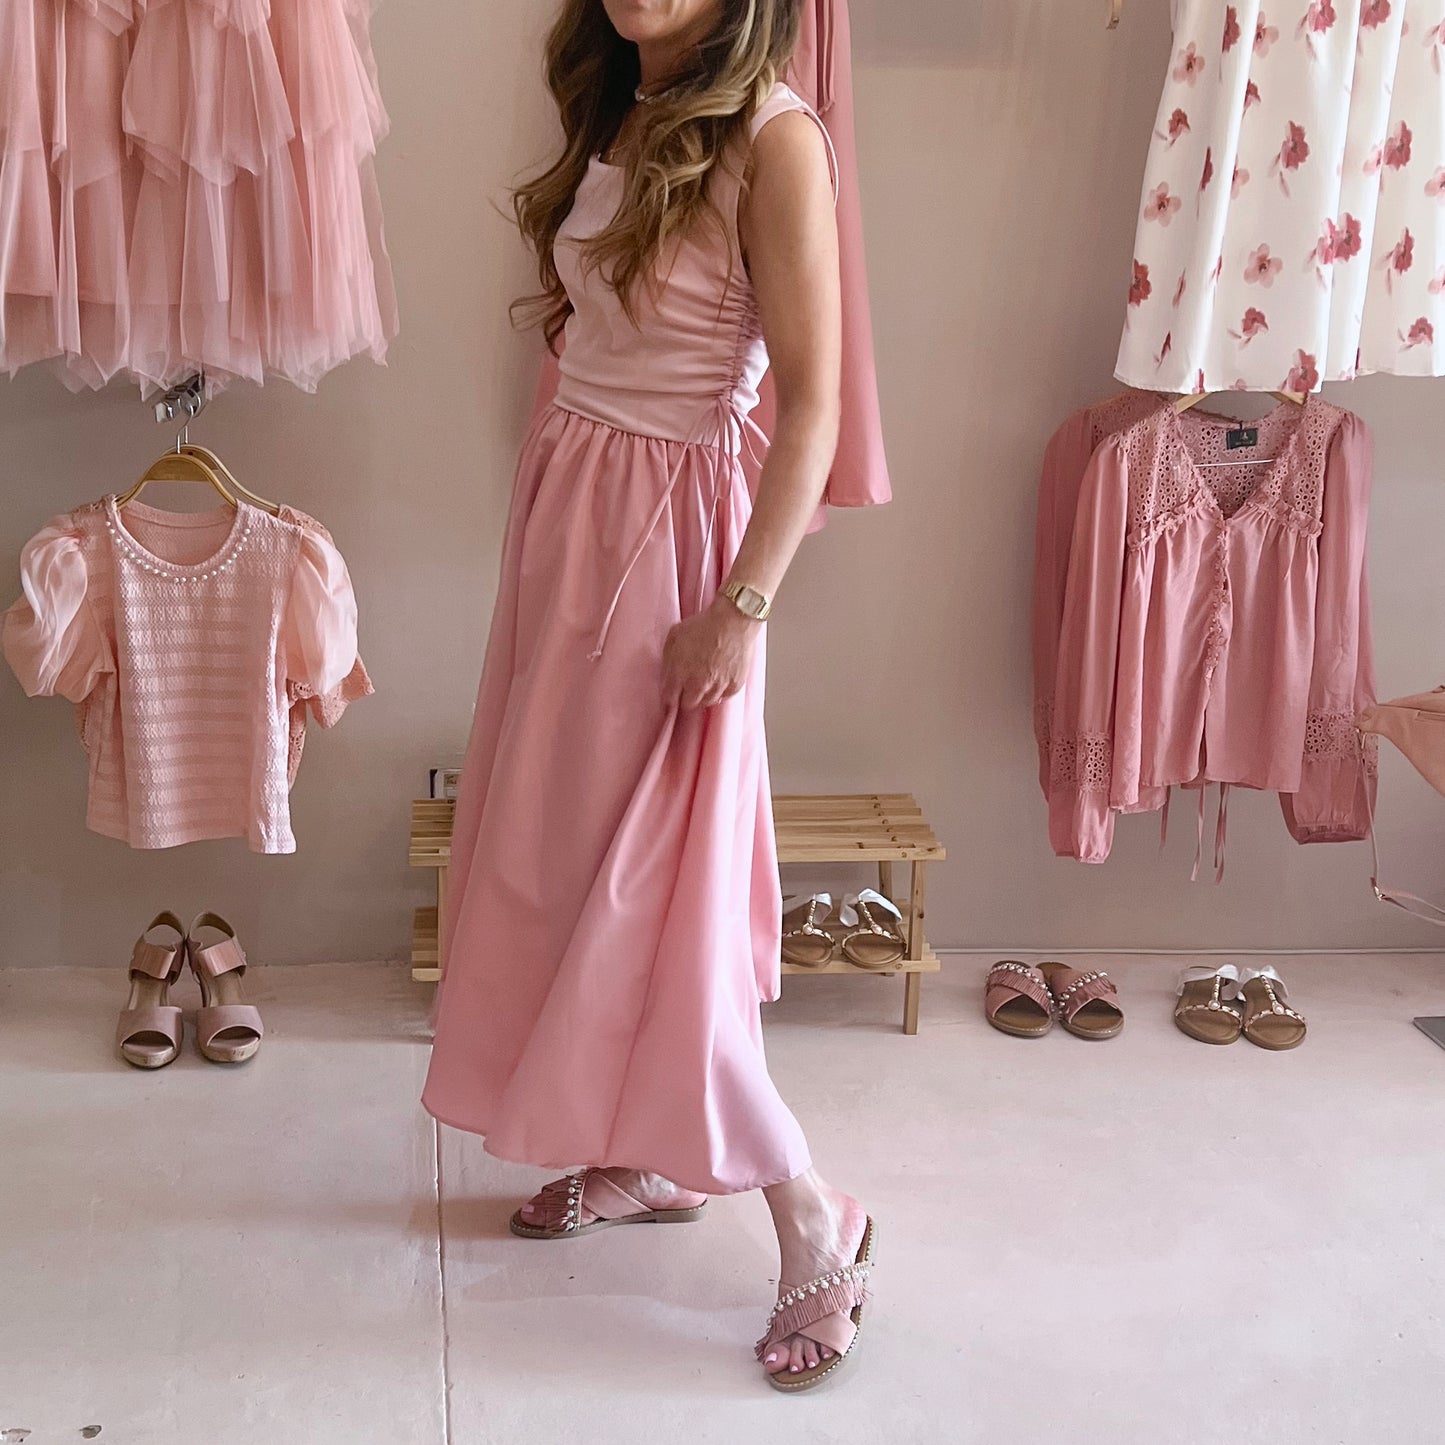 Pink Tank Top Dress